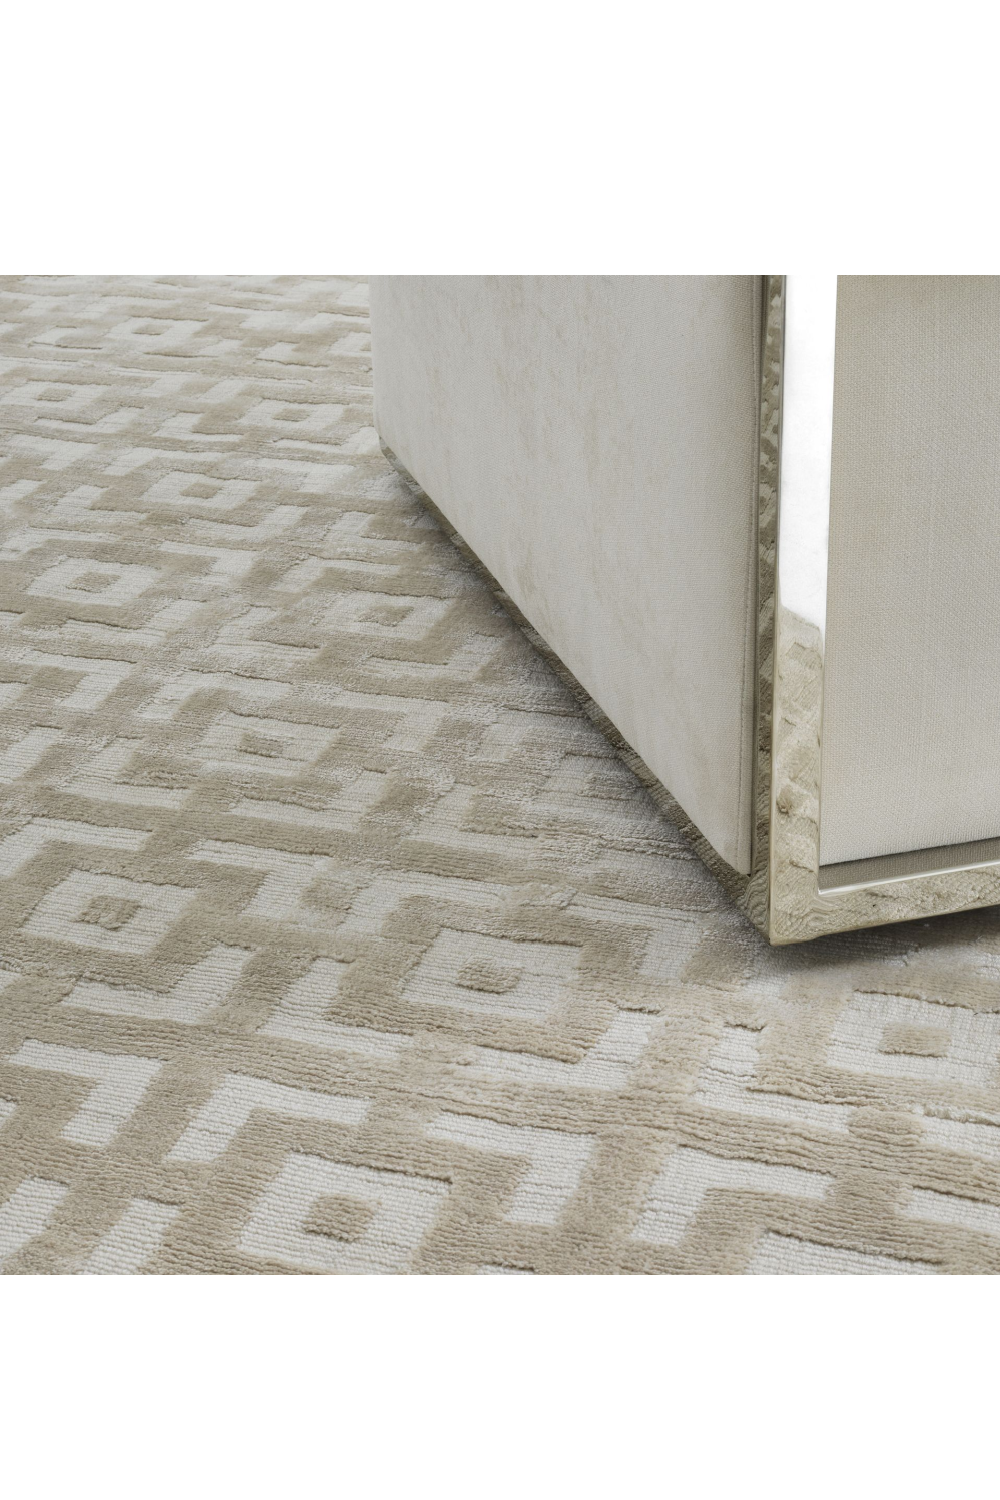 Ivory Carpet 10' x 13' | Eichholtz Reeves | Oroa.com